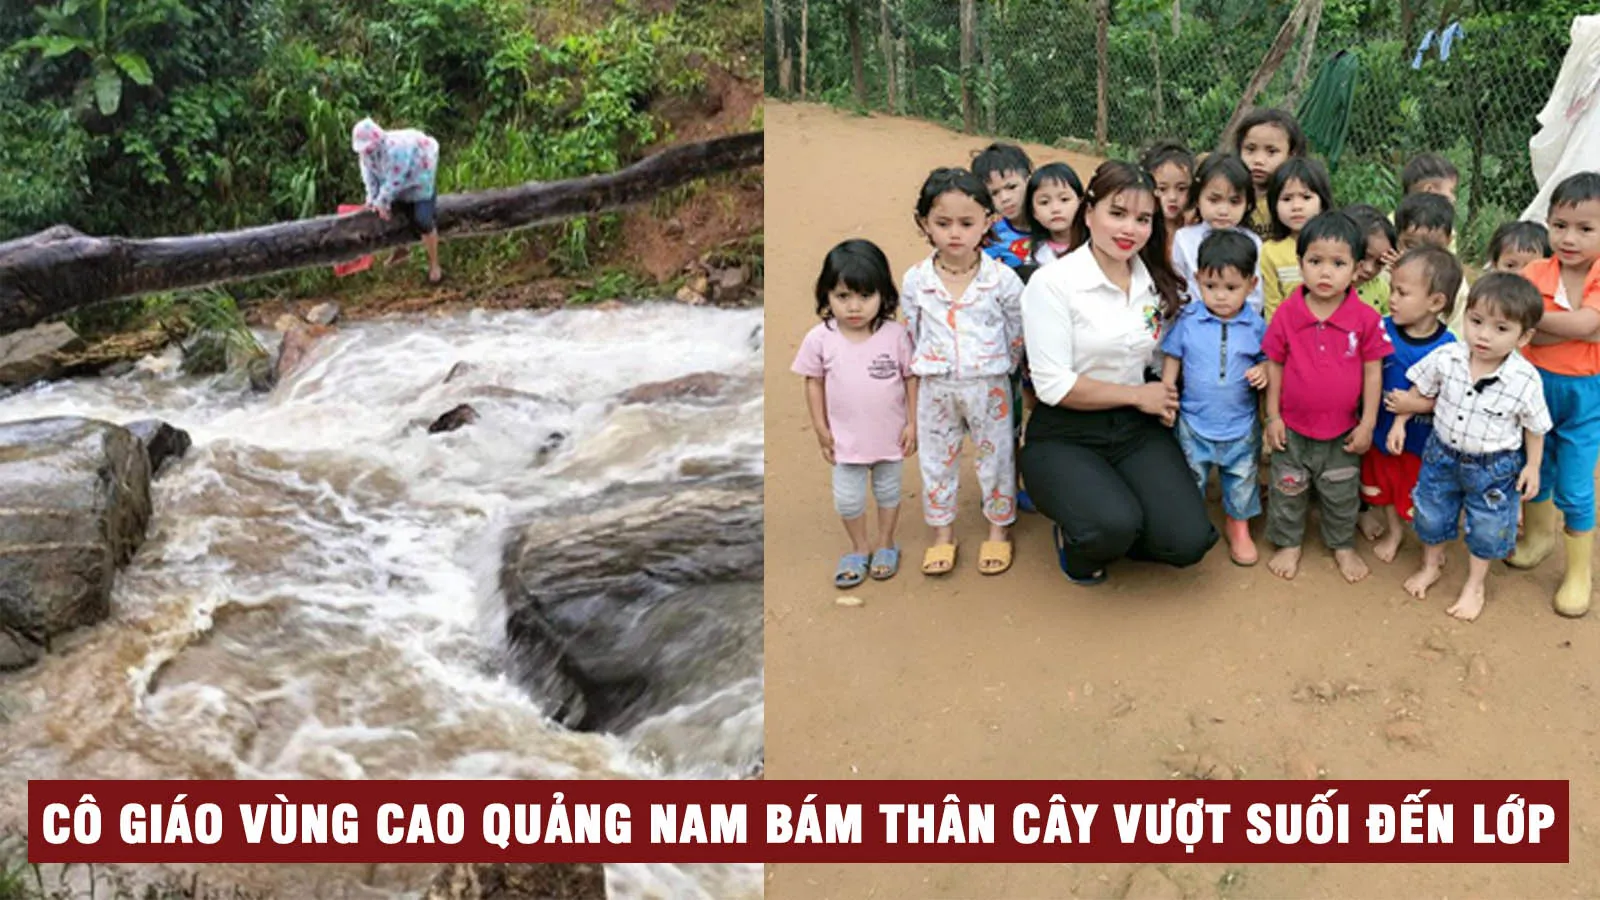 Quảng Nam: Cô giáo vùng cao bám thân cây vượt suối đến trường